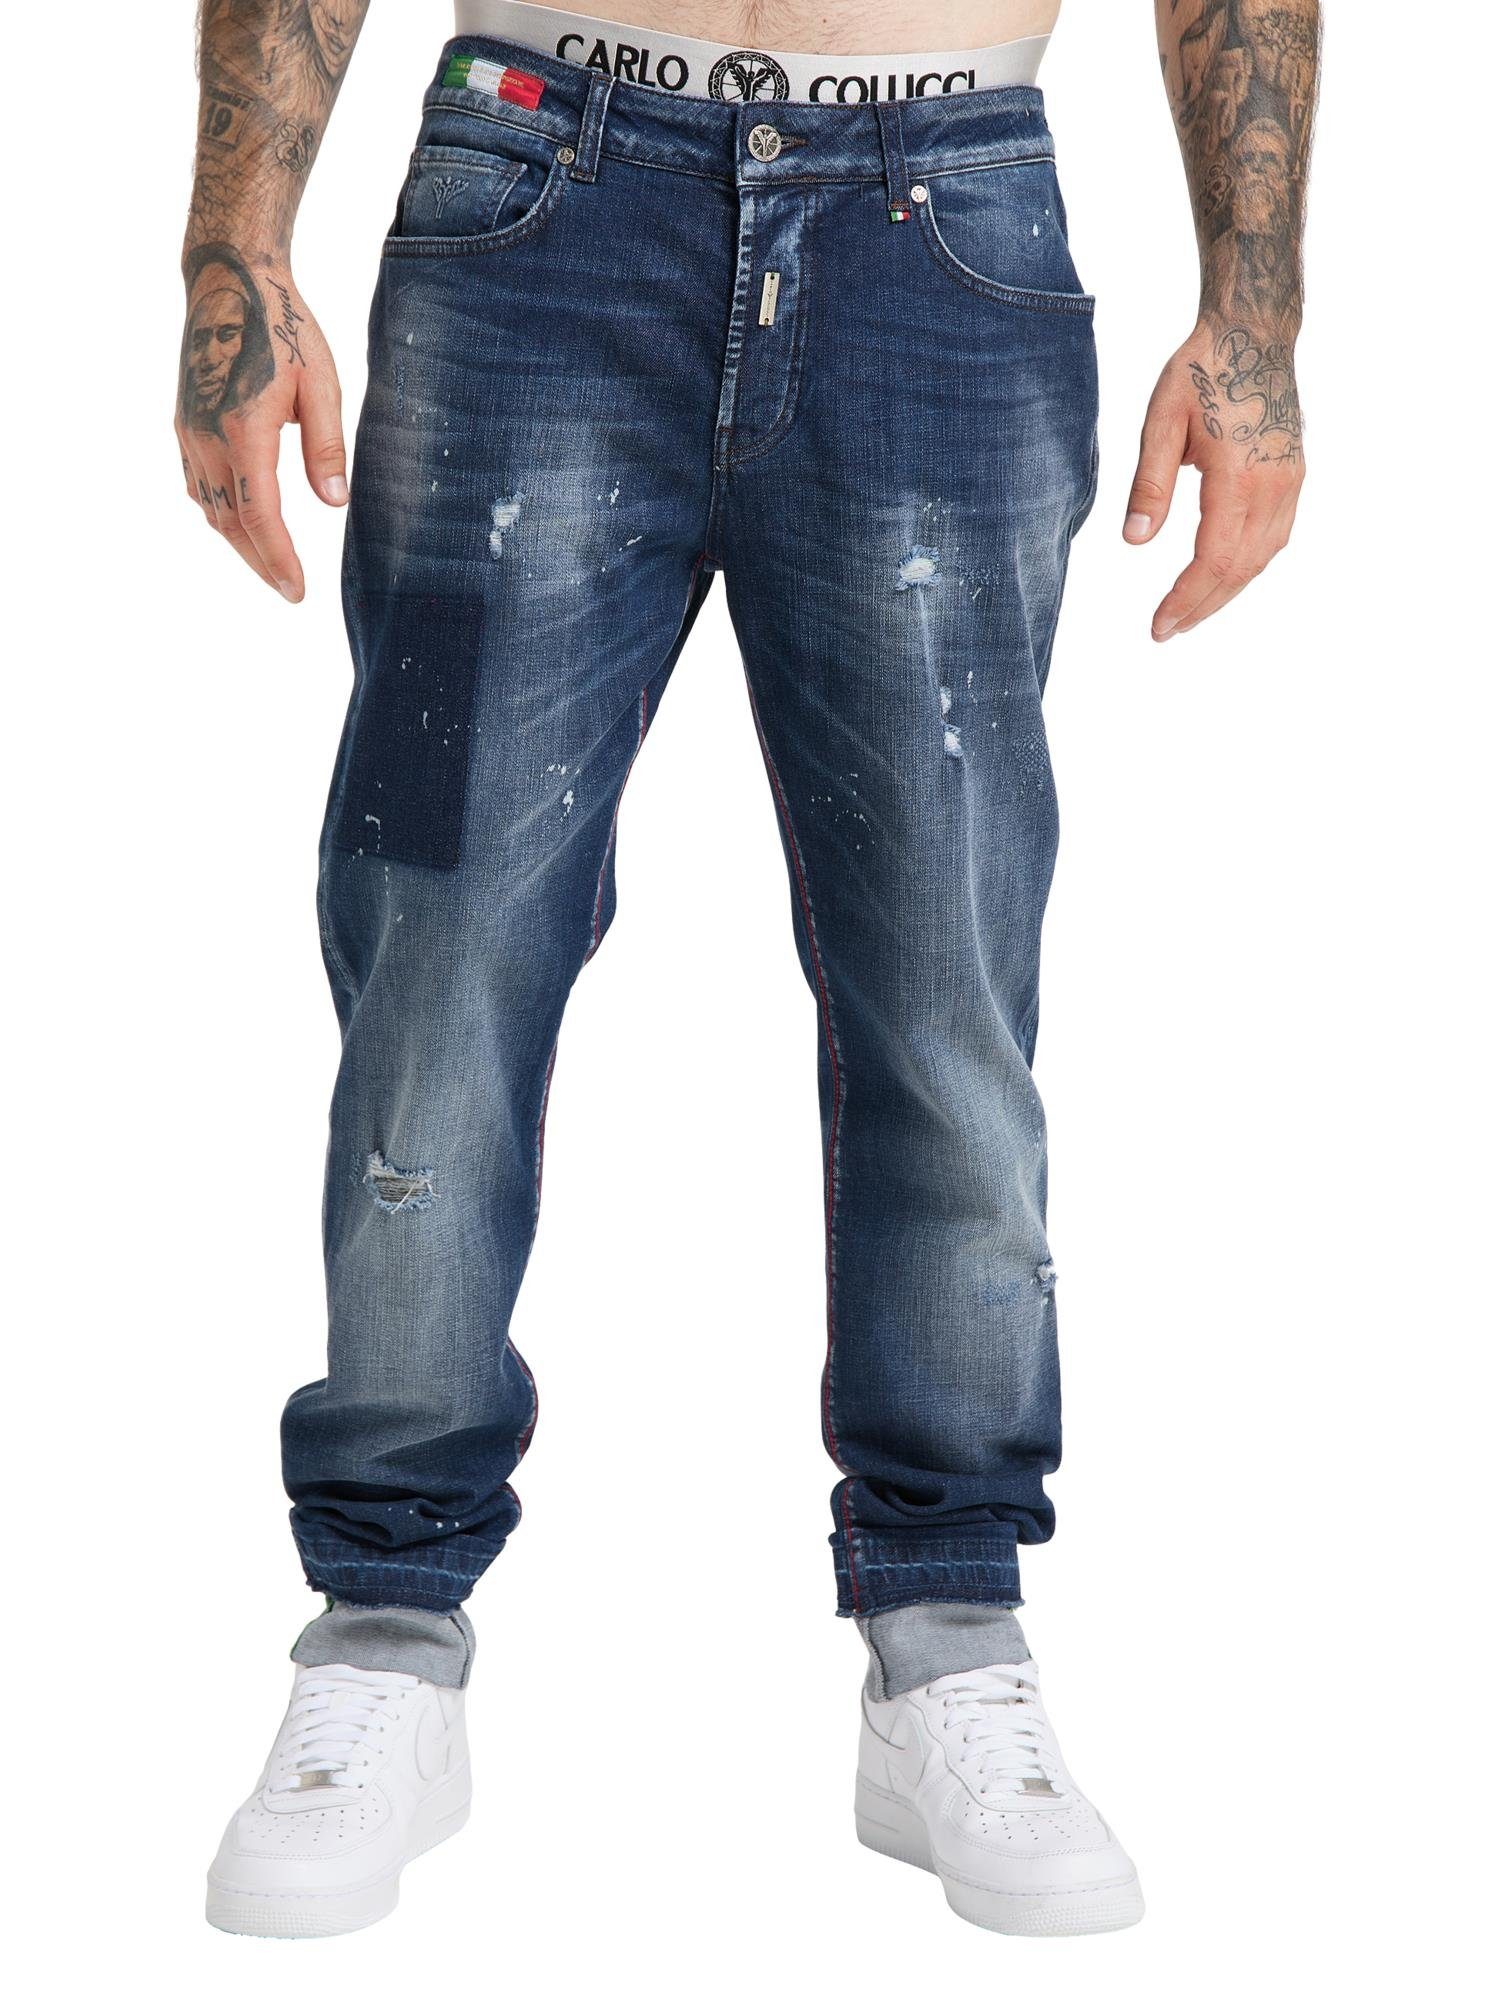 CARLO COLUCCI 5-Pocket-Jeans Cavicchioli 34W